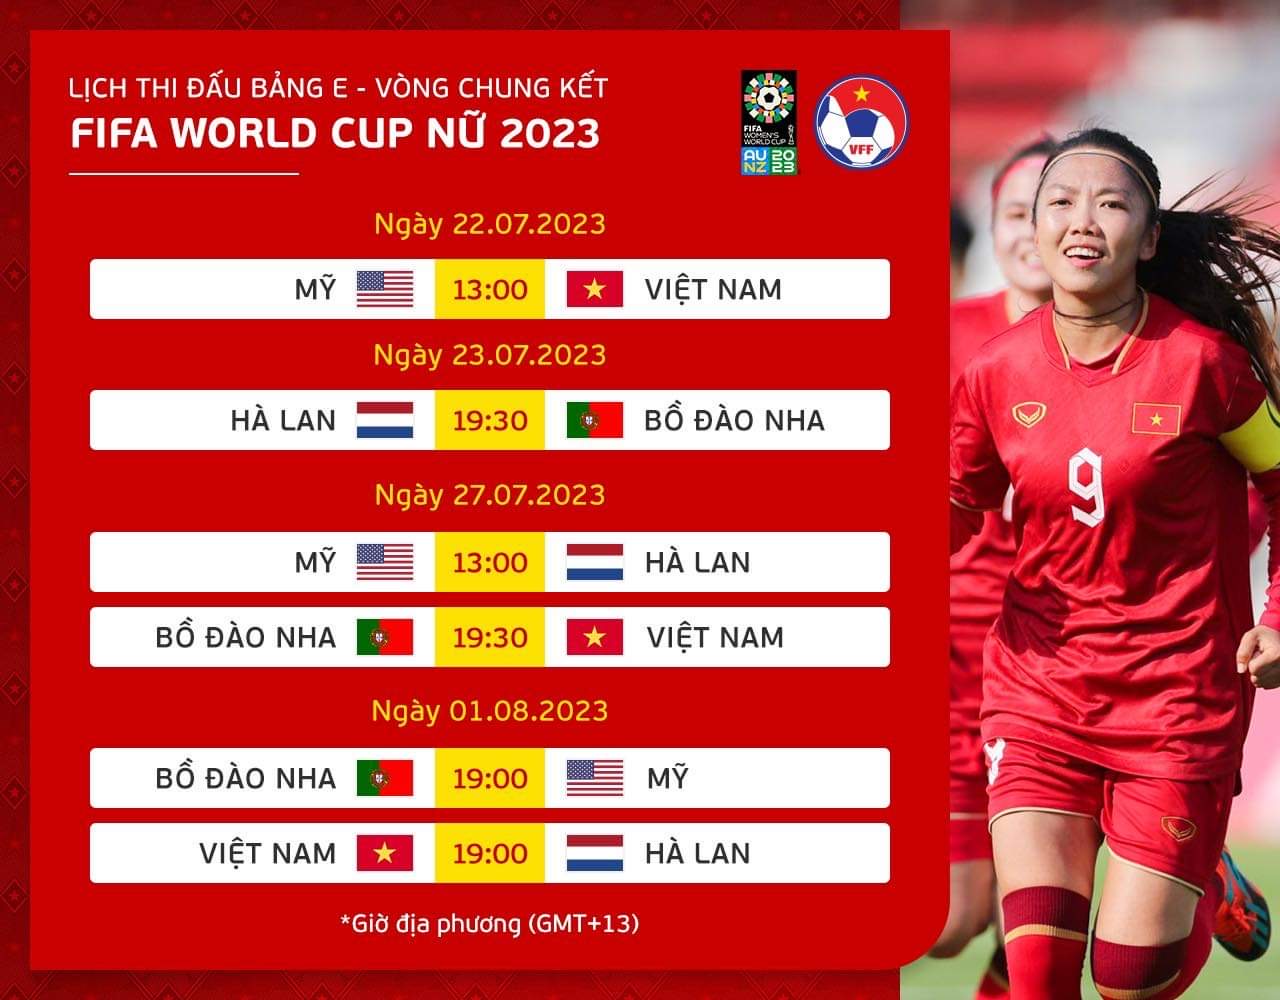 Đội tuyển nữ Việt Nam mang núi hành lý dự World Cup, Thanh Nhã xinh đẹp rạng ngời - Ảnh 24.